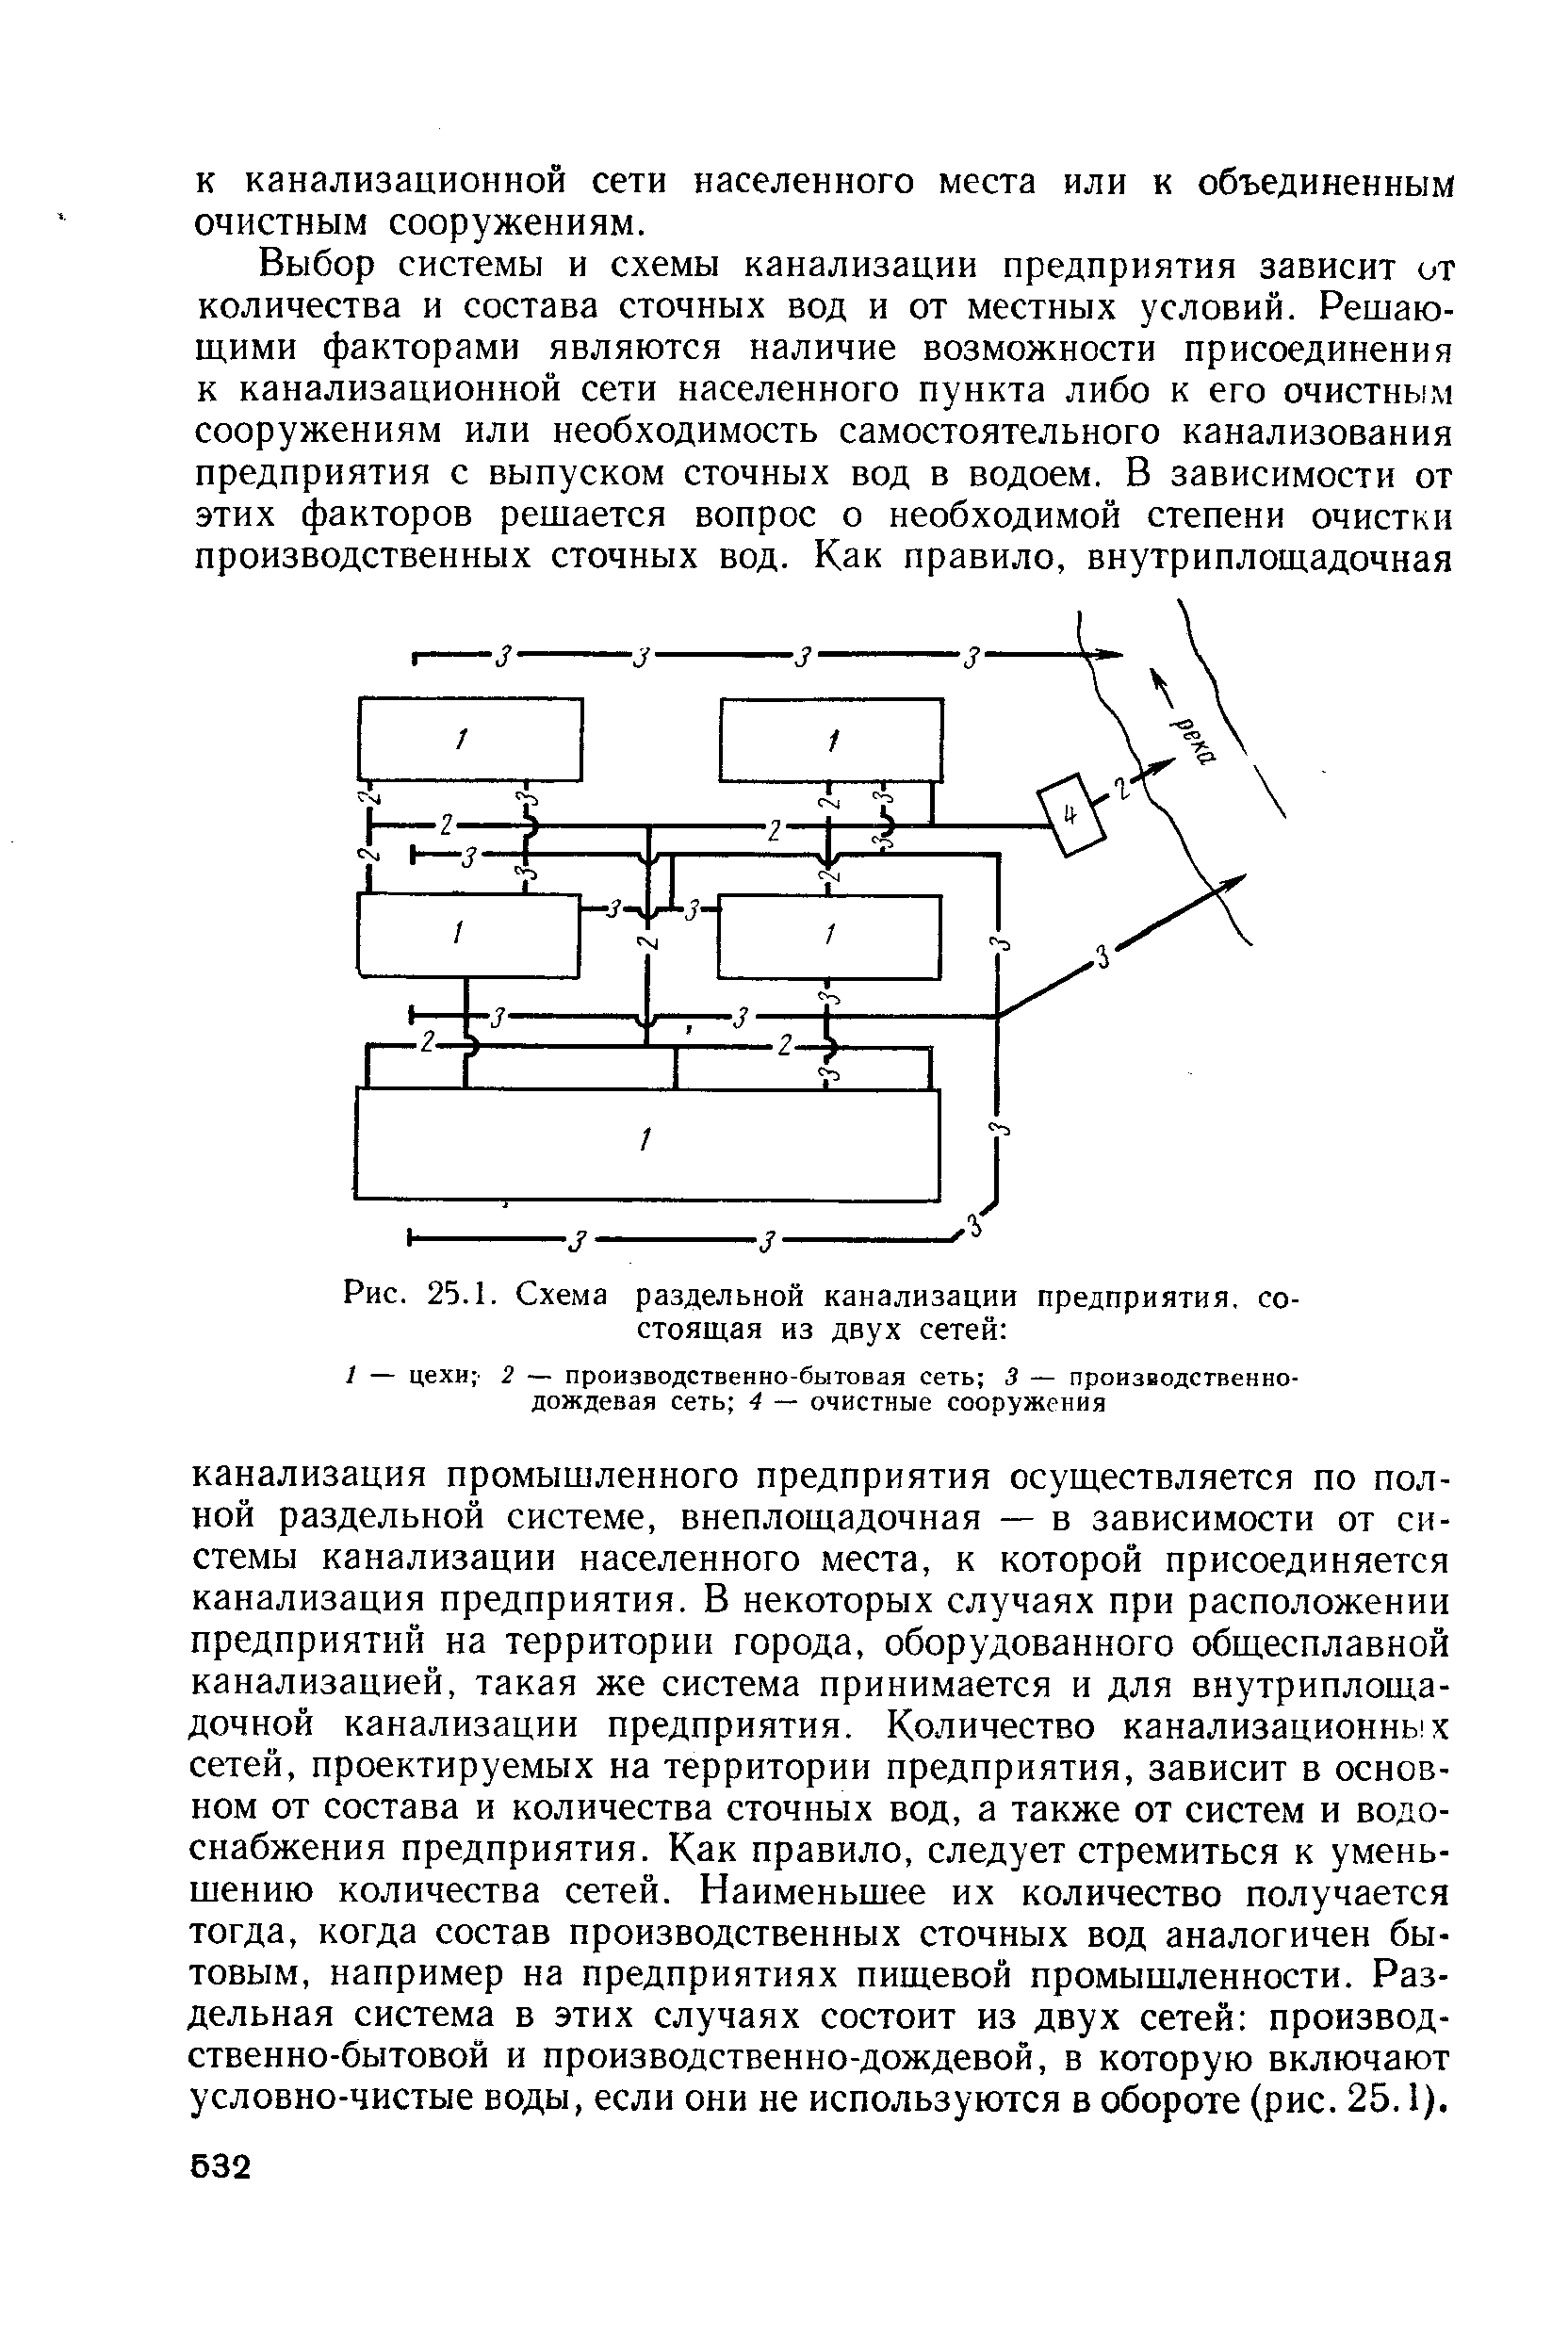 Схема раздельной канализации предприятия, состоящая из двух сетей